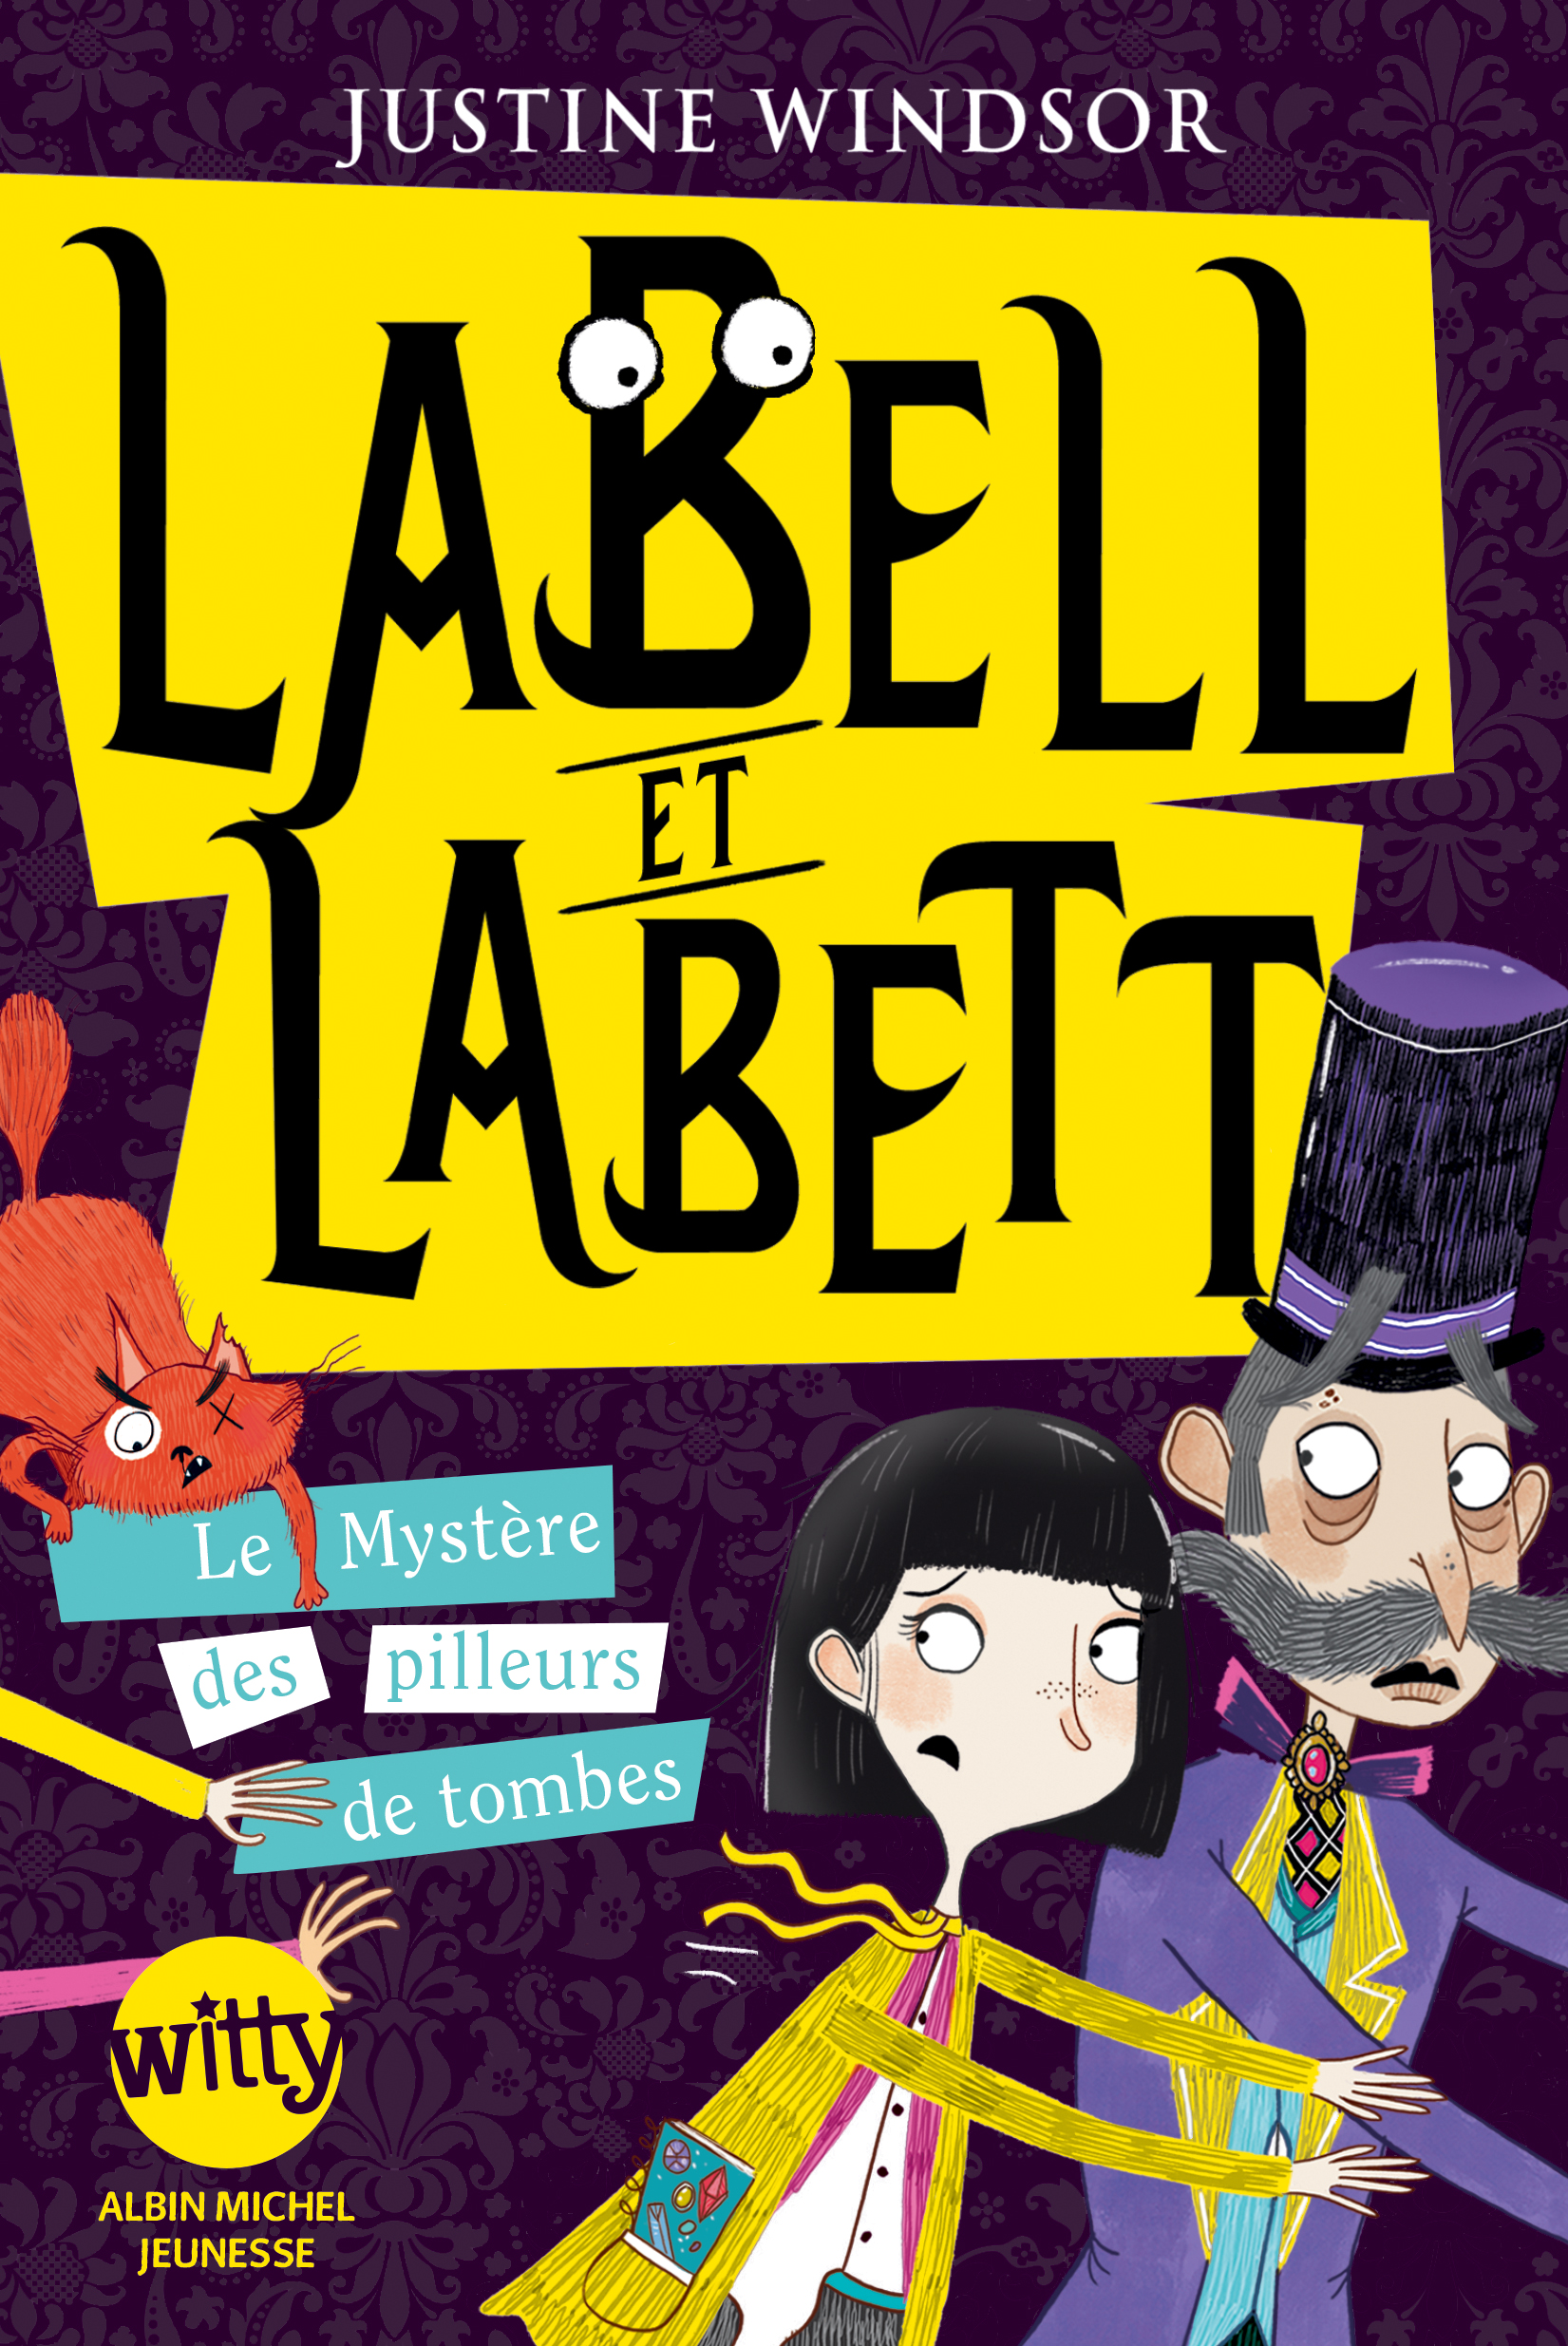 Couverture du livre Labell et Labett - tome 2